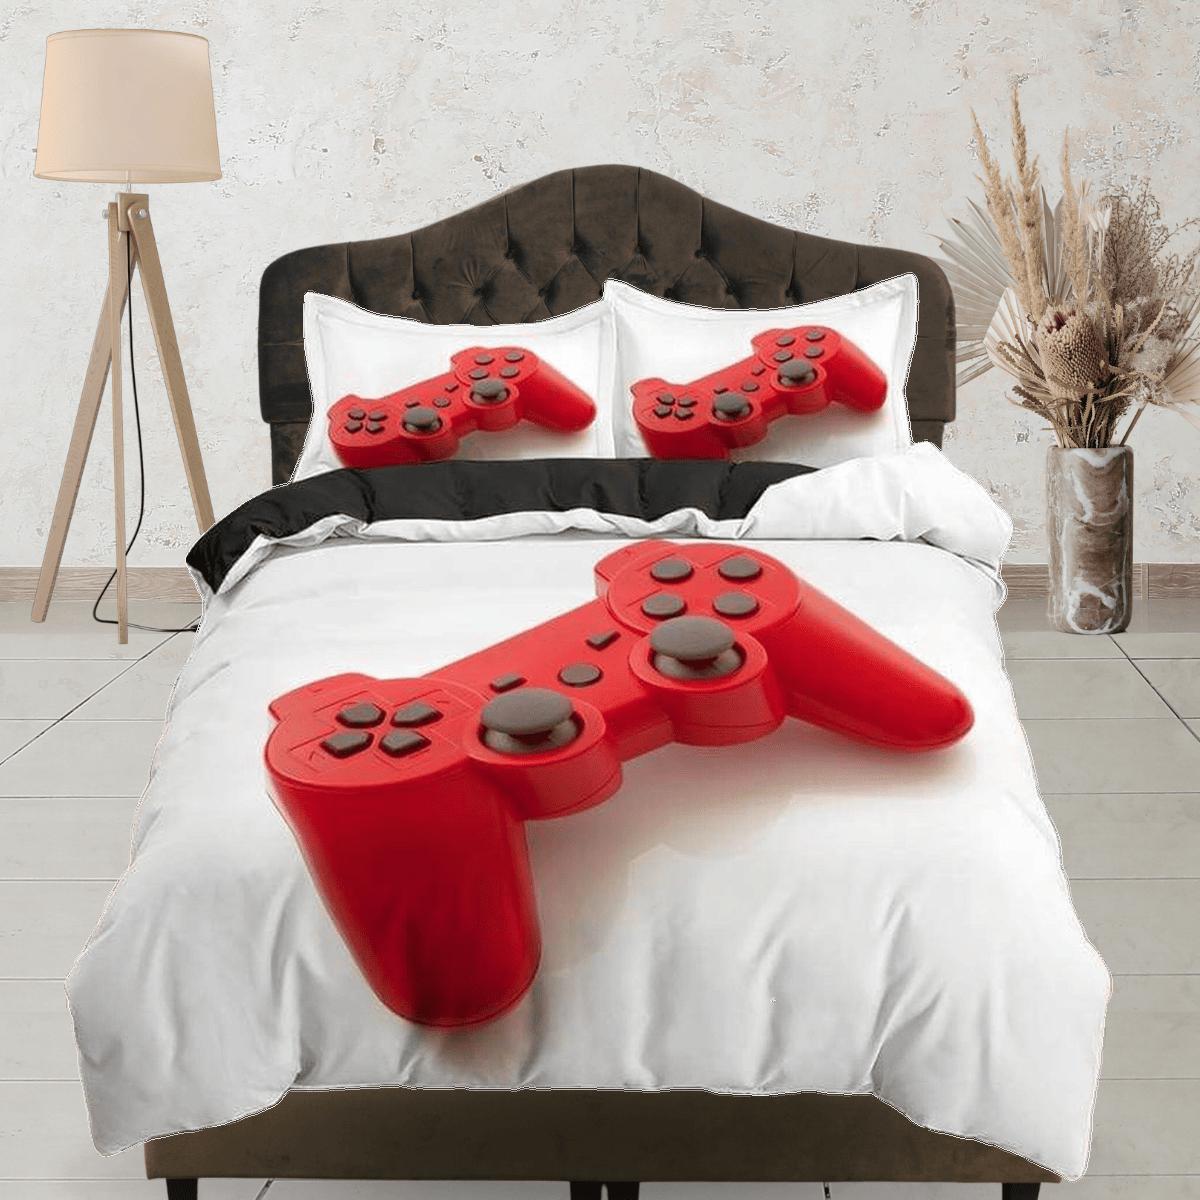 daintyduvet Red controller gamer bedding duvet cover, video gamer boyfriend gift bedding set full king queen twin, boys bedroom, college dorm bedding